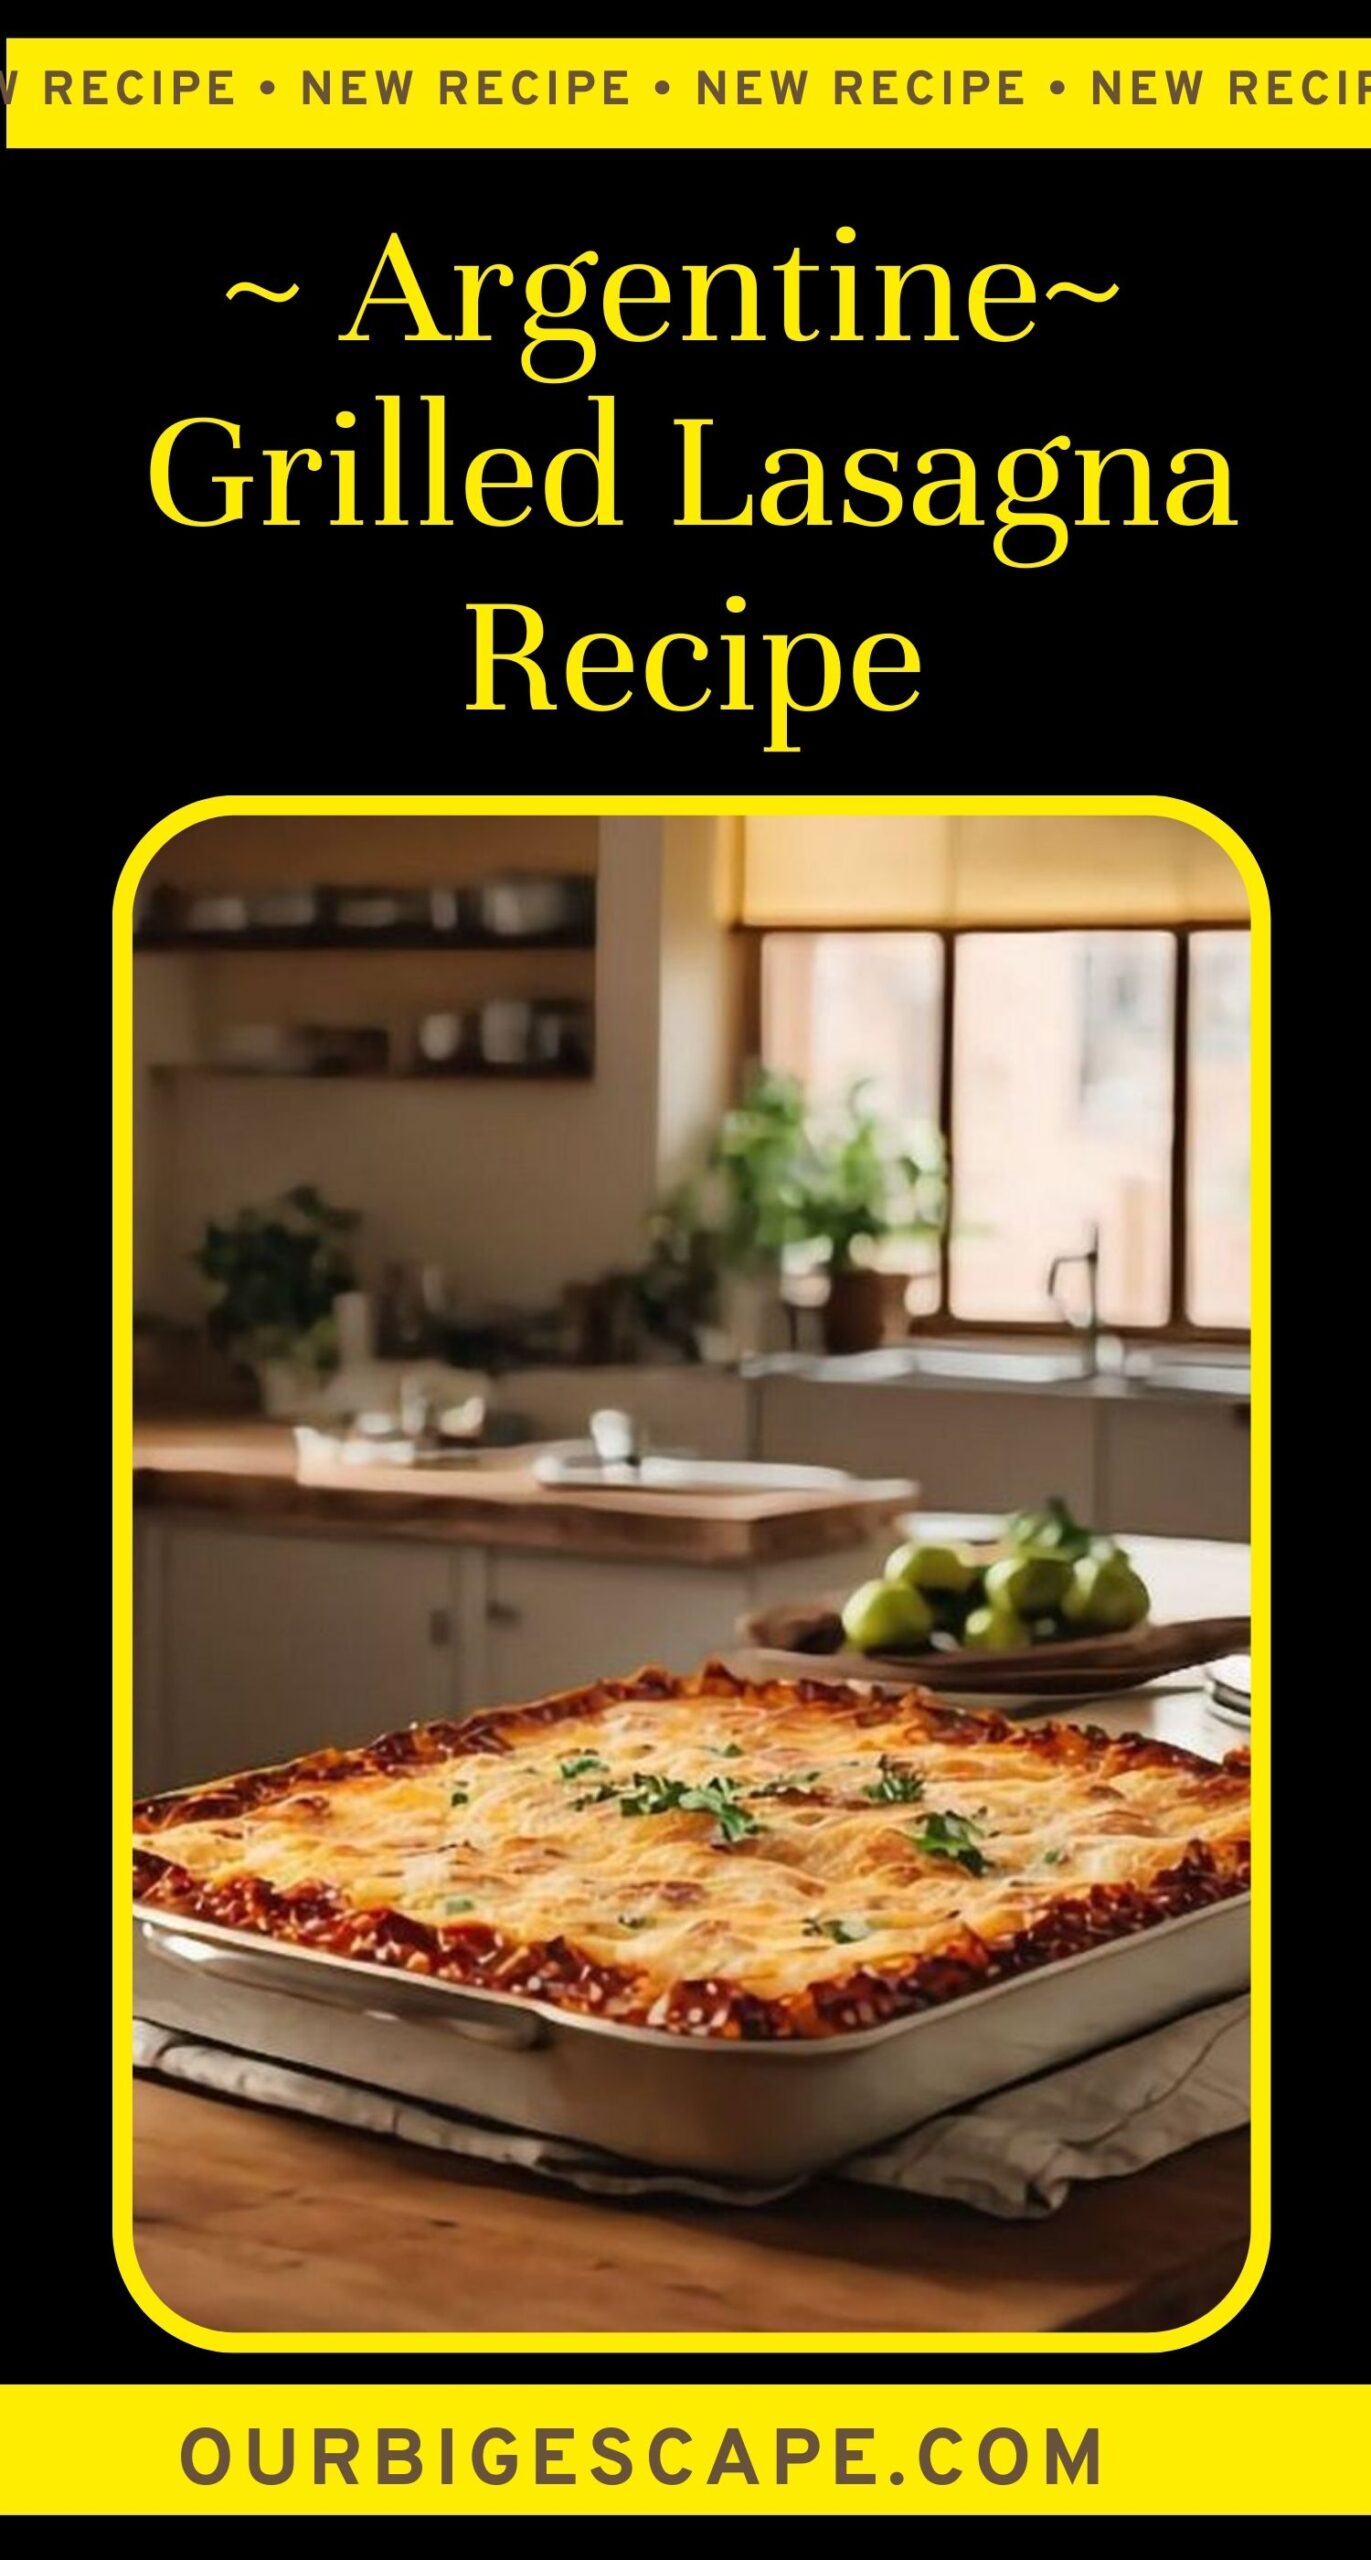 1. Argentine Grilled Lasagna Recipe